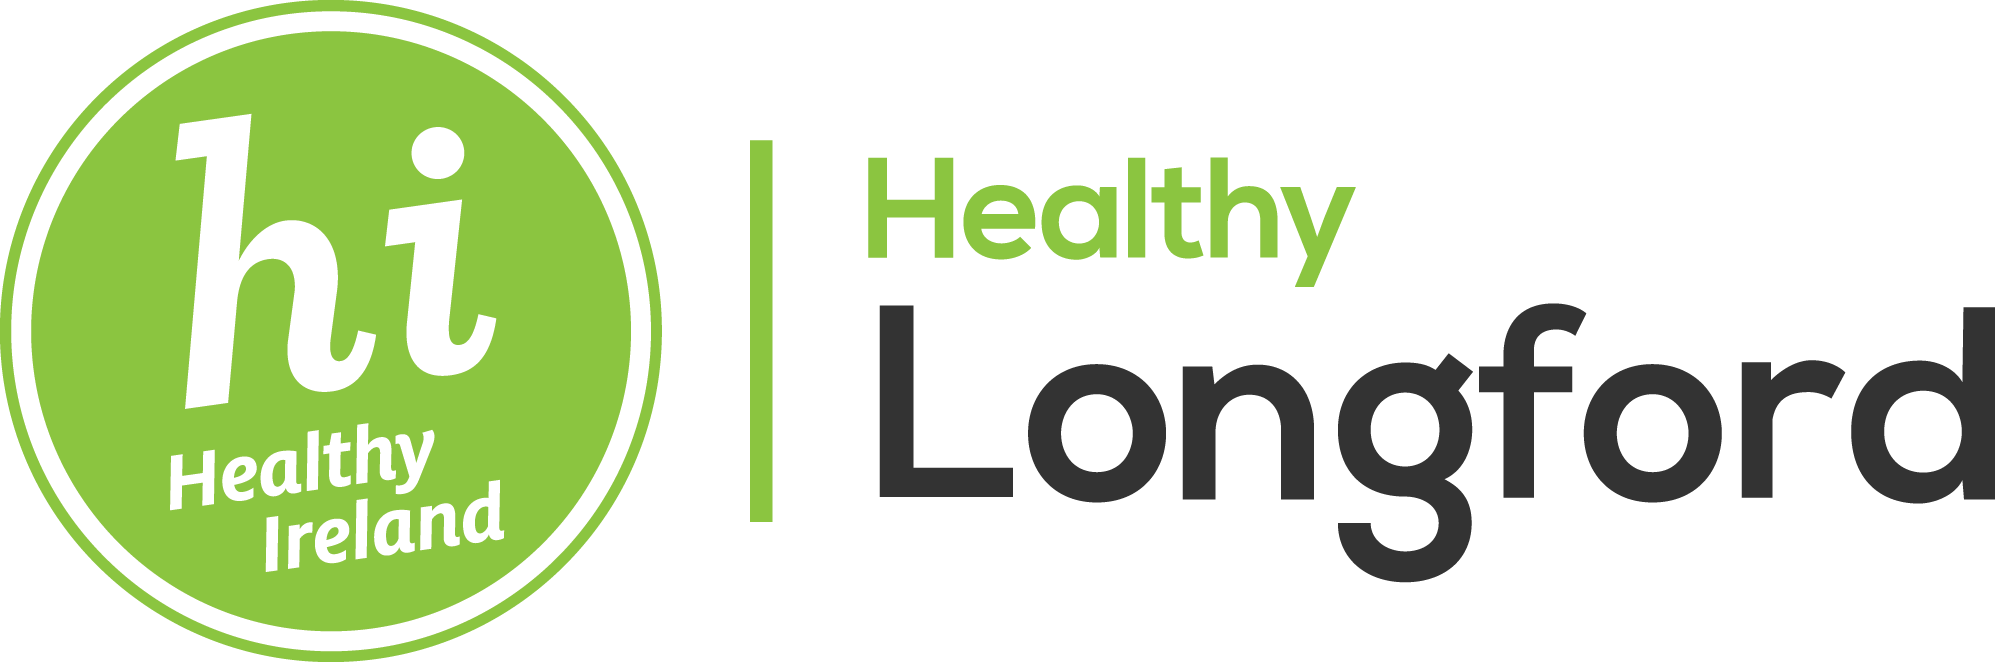 Healthy Ireland Healthy Longford logo